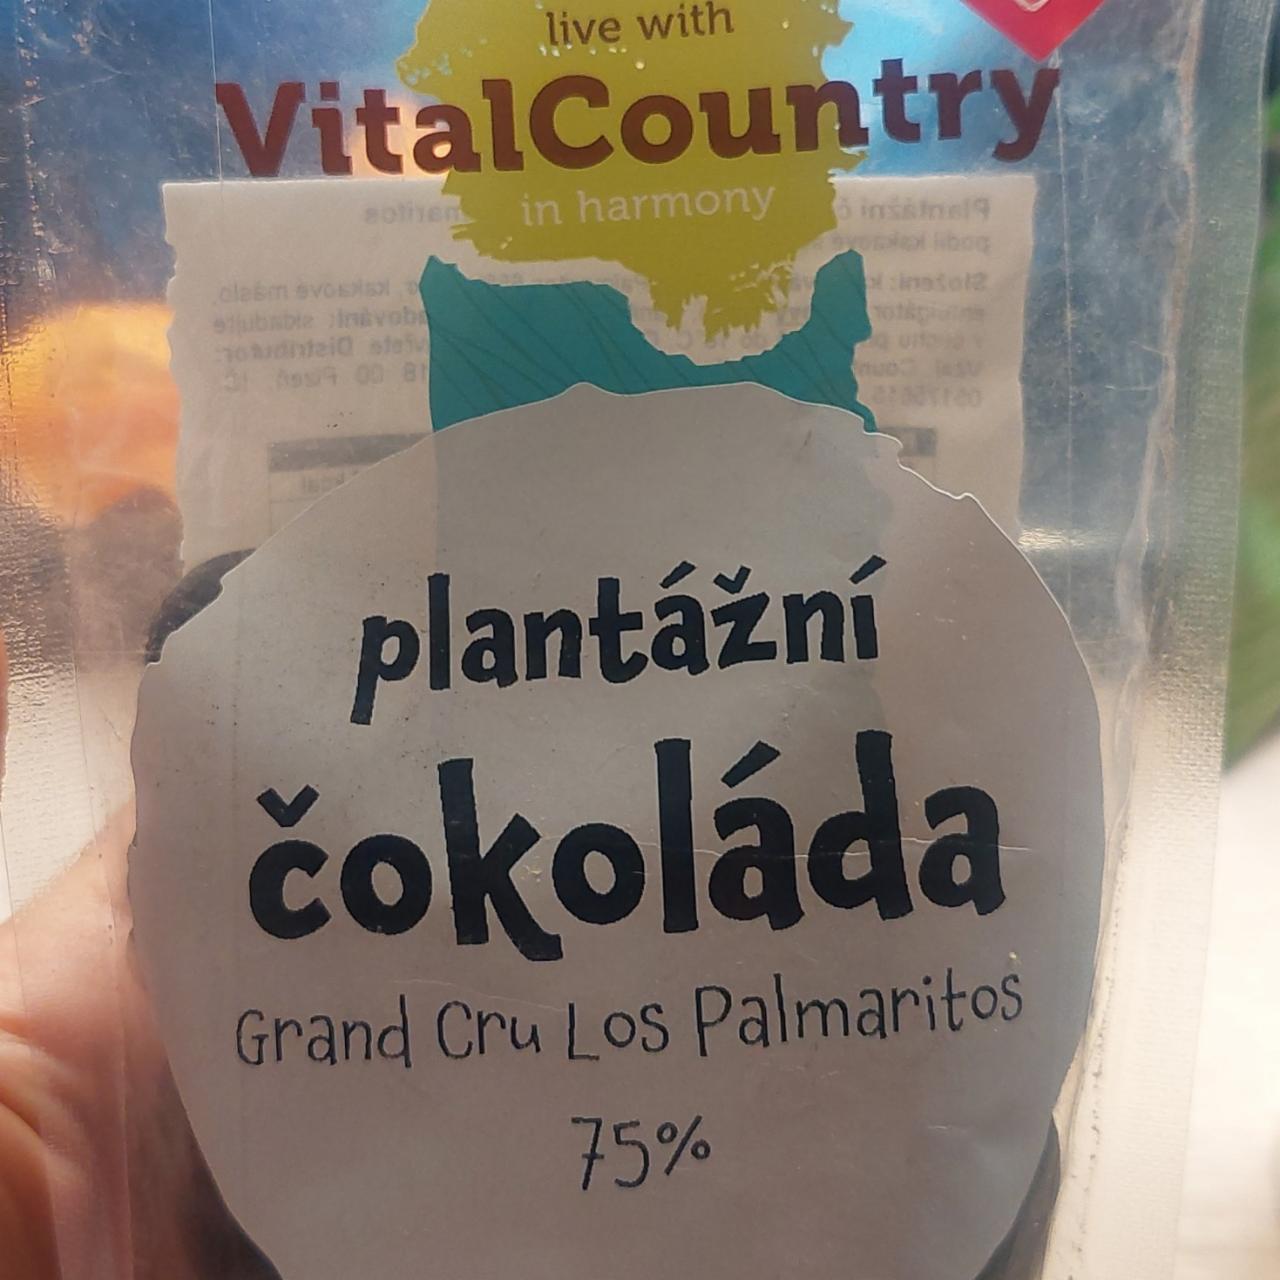 Fotografie - Plantážní čokoláda Grand Cru Los Palmaritos 75% VitalCountry